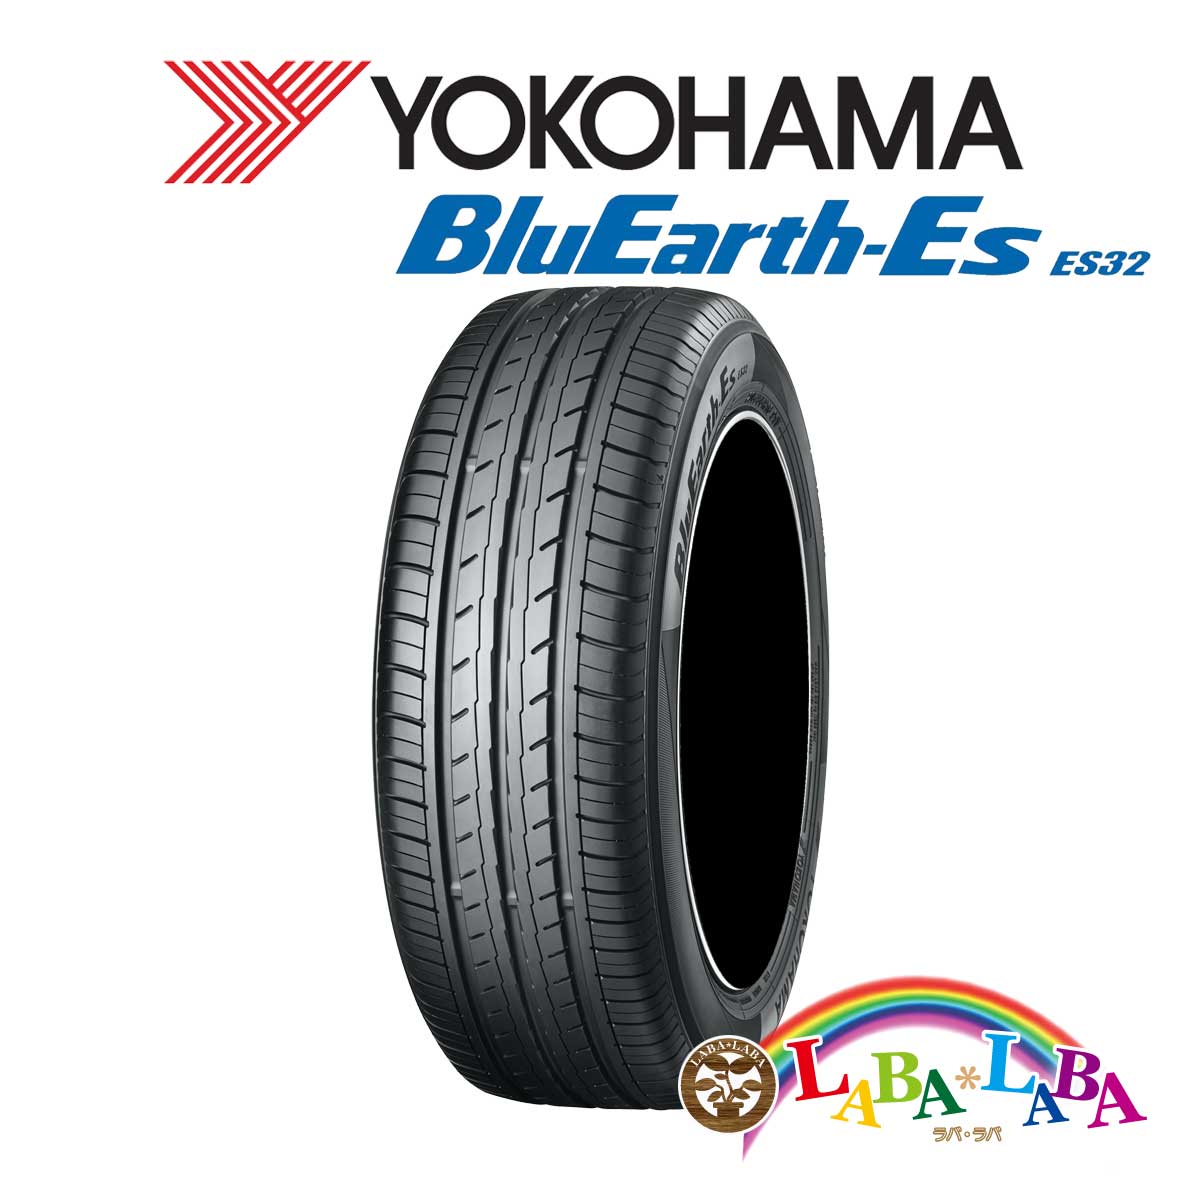 ２本以上送料無料 国産タイヤ サマータイヤ 新品 タイヤのみ YOKOHAMA 安い 激安 プチプラ 高品質 新作送料無料 ヨコハマ ES32 ブルーアース 175 79H BluEarth-Es 60R14